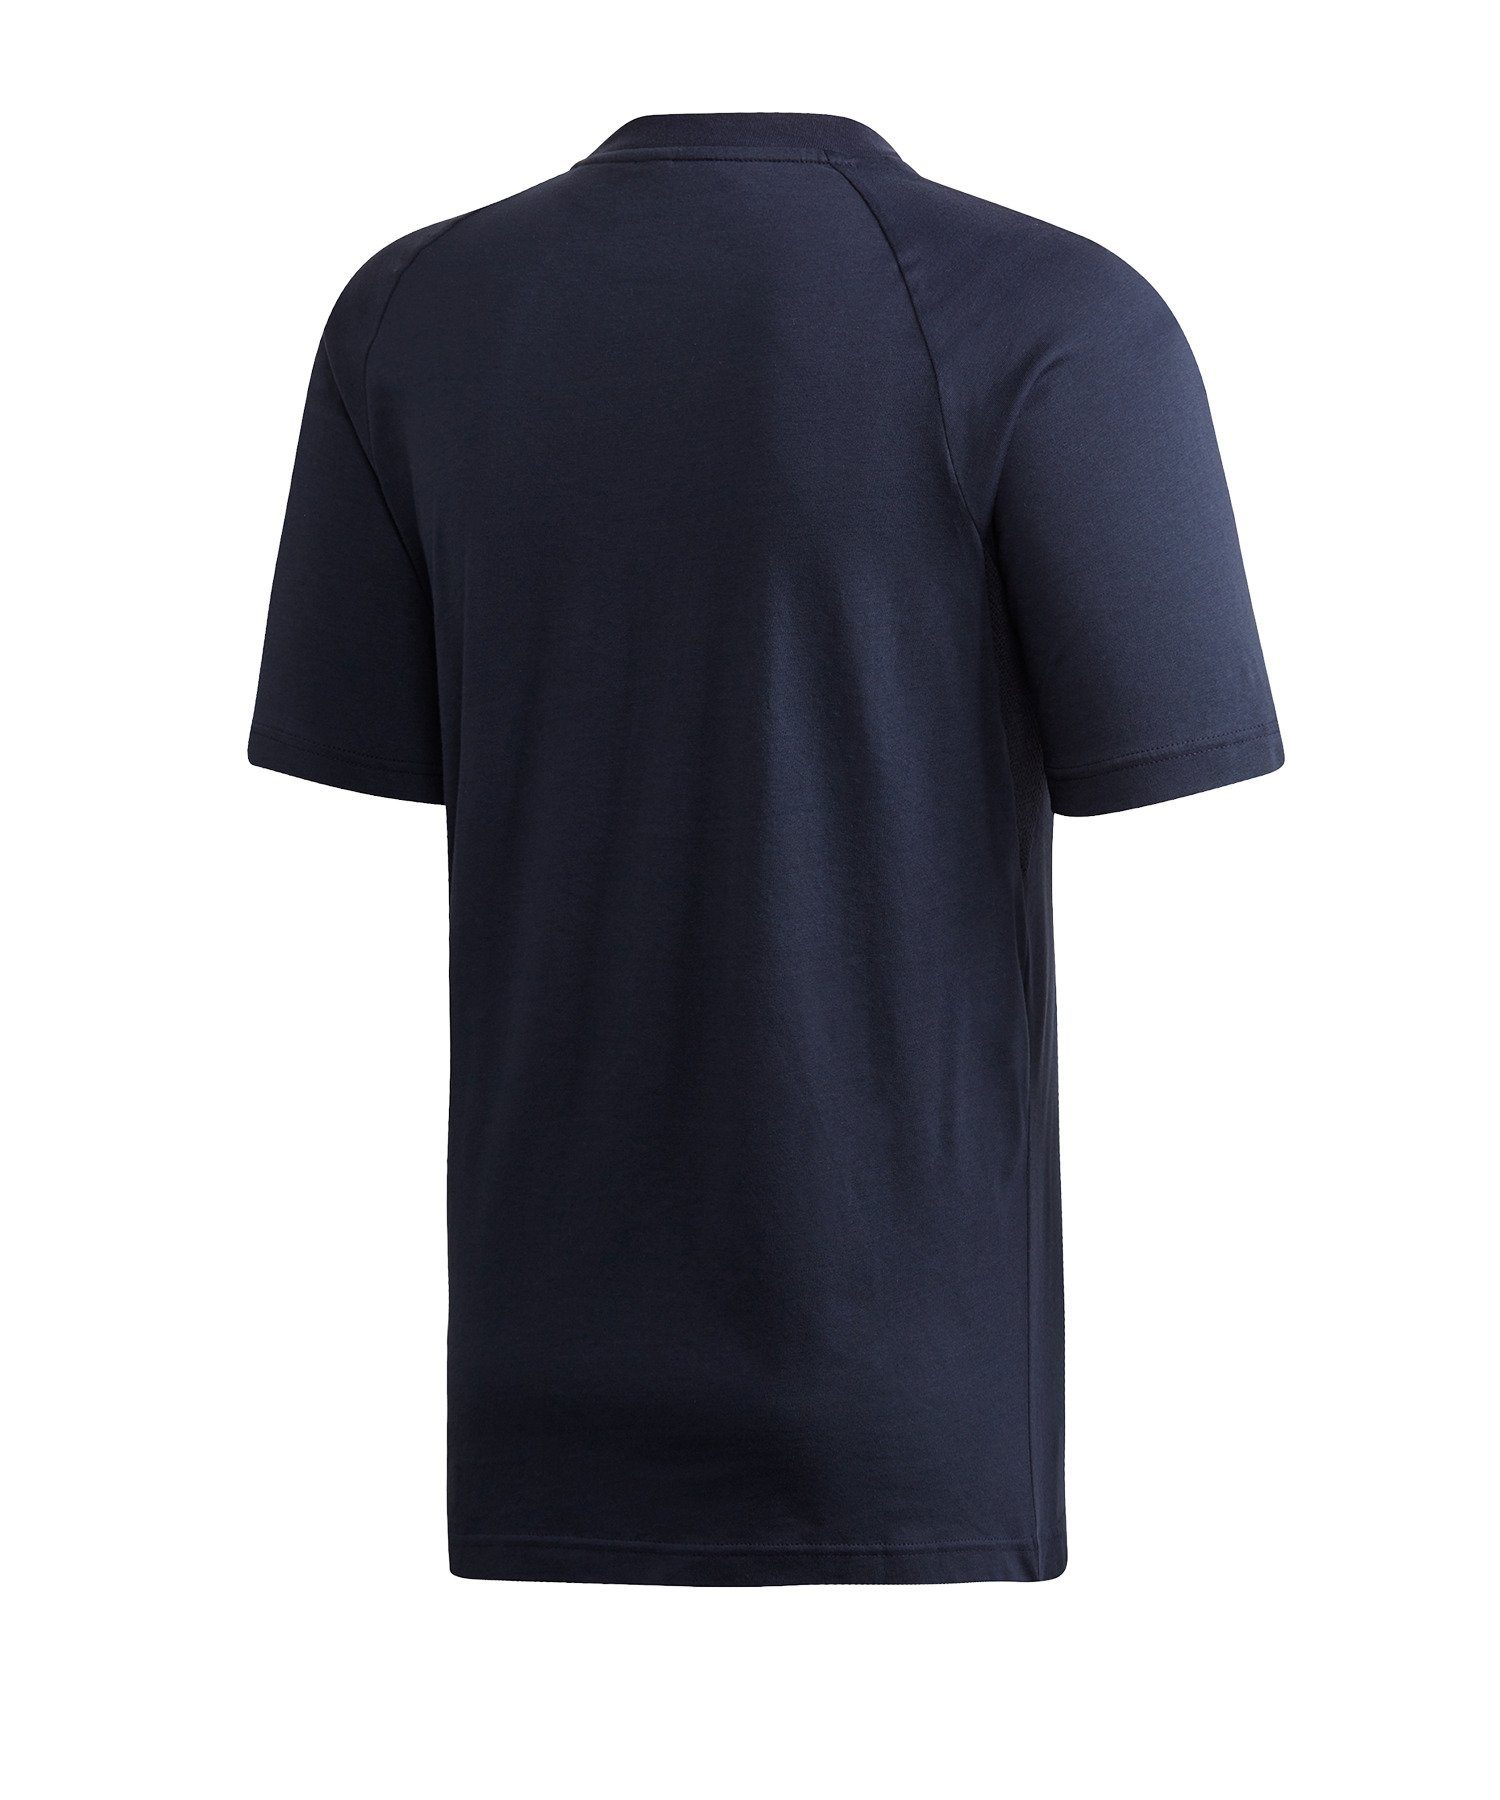 blauschwarz T-Shirt default Performance T-Shirt adidas MH